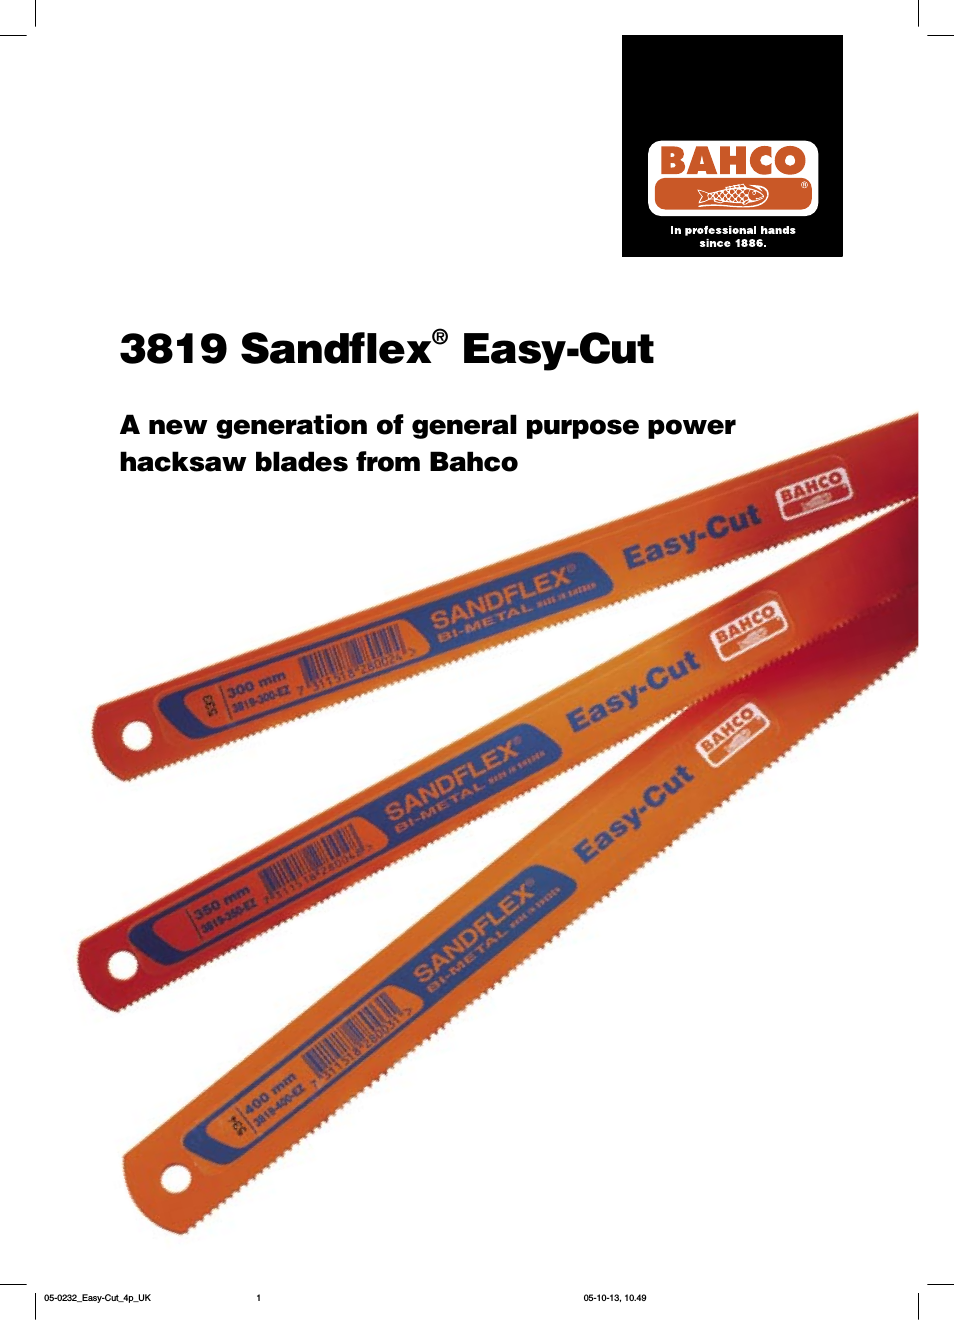 Sandflex Easy-Cut 3819